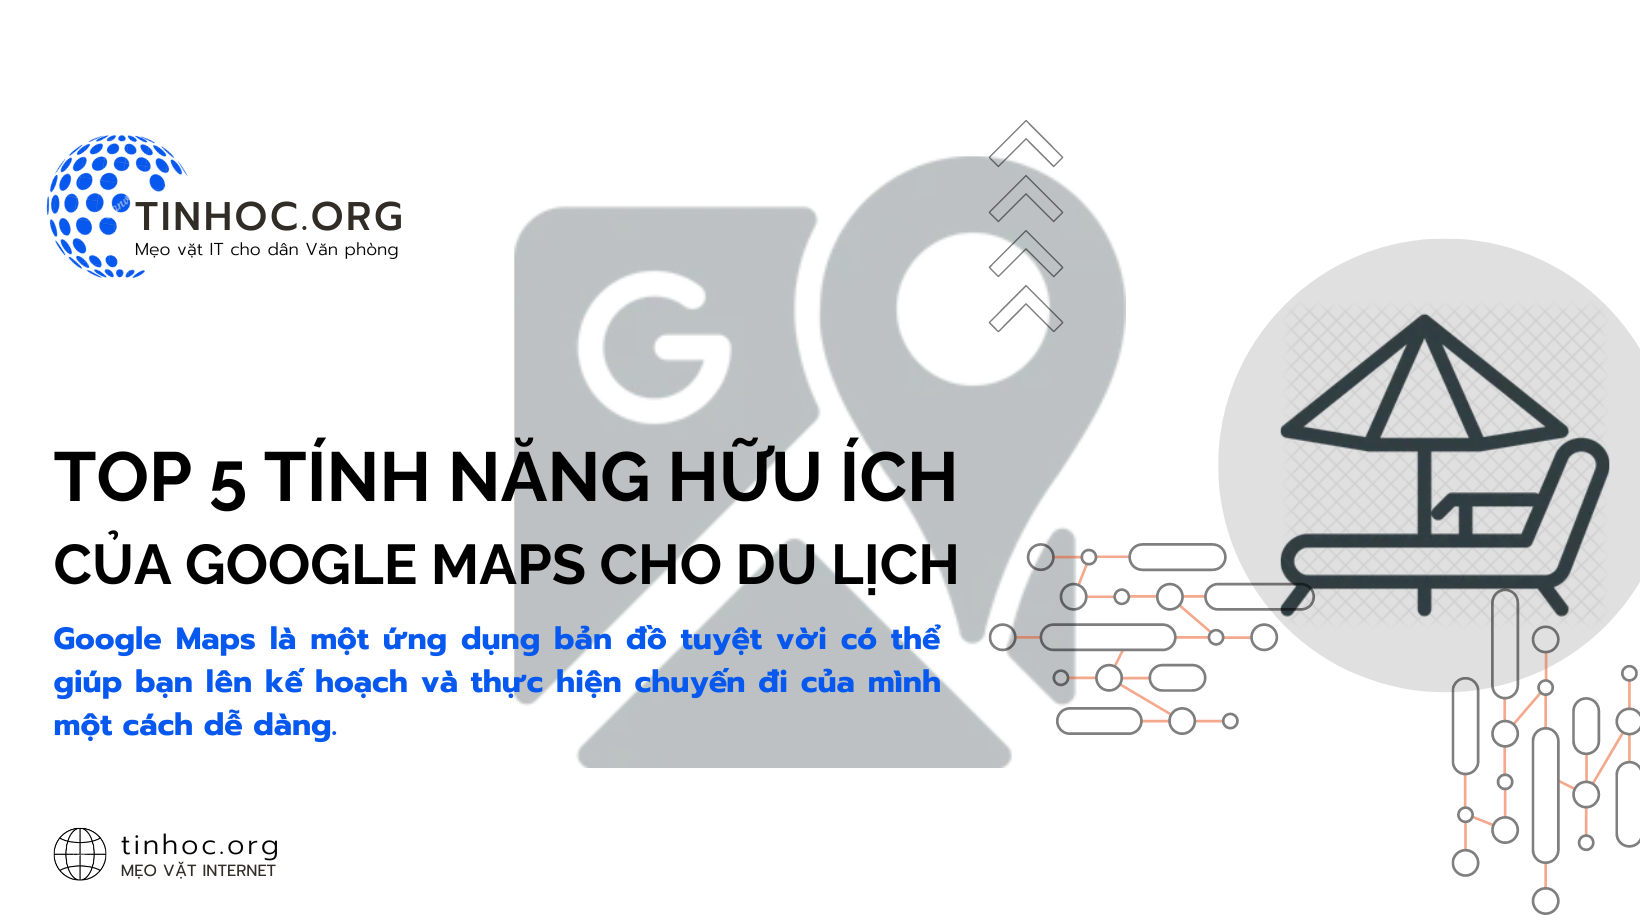 Google Maps là một ứng dụng bản đồ tuyệt vời có thể giúp bạn lên kế hoạch và thực hiện chuyến đi của mình một cách dễ dàng.